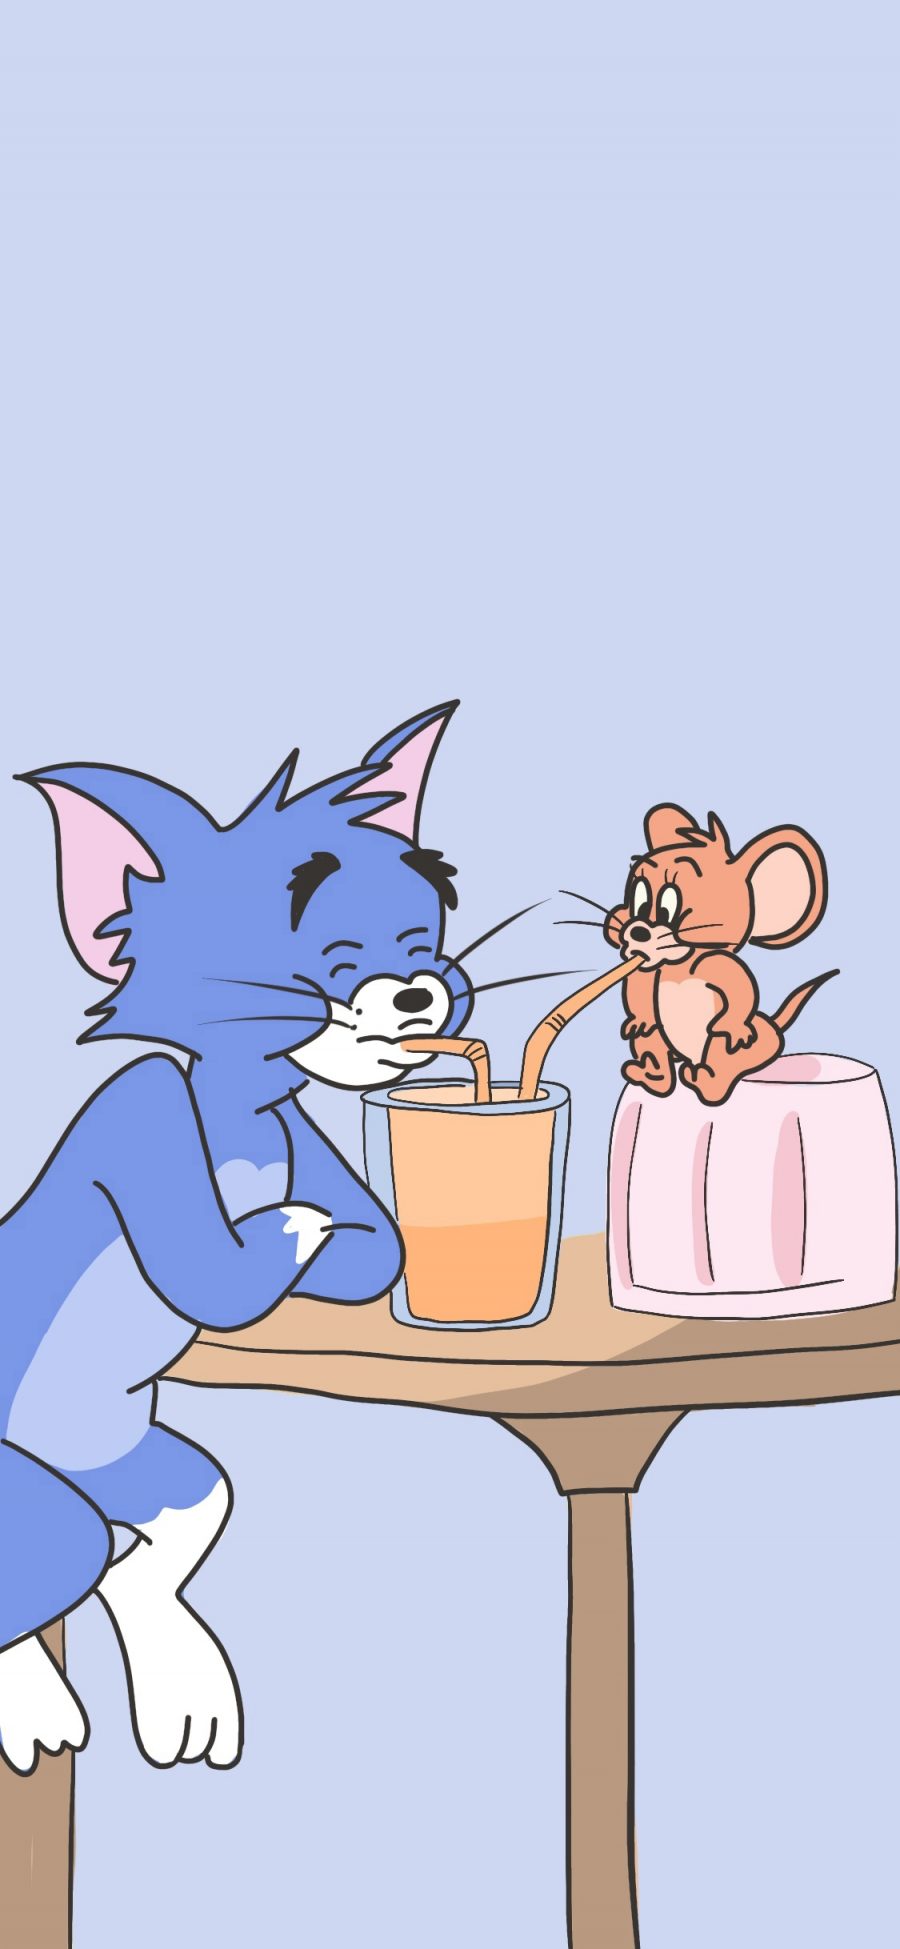 [2436×1125]猫和老鼠 果汁 动画 杰克 汤姆 苹果手机动漫壁纸图片